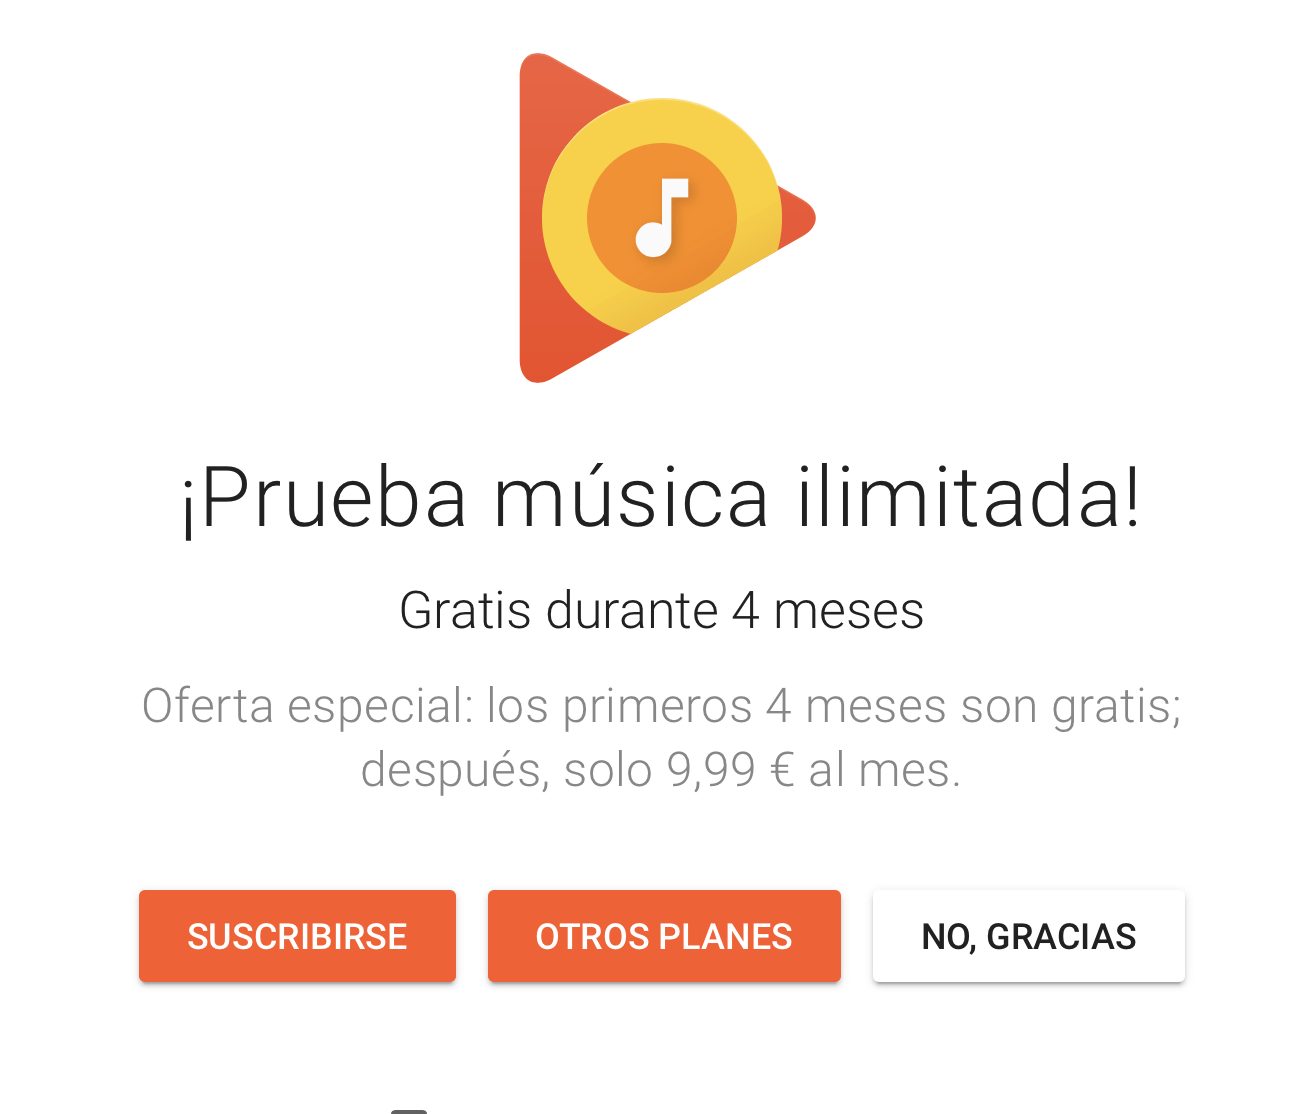 Google Play Music ofrece 4 meses gratis a los nuevos suscriptores